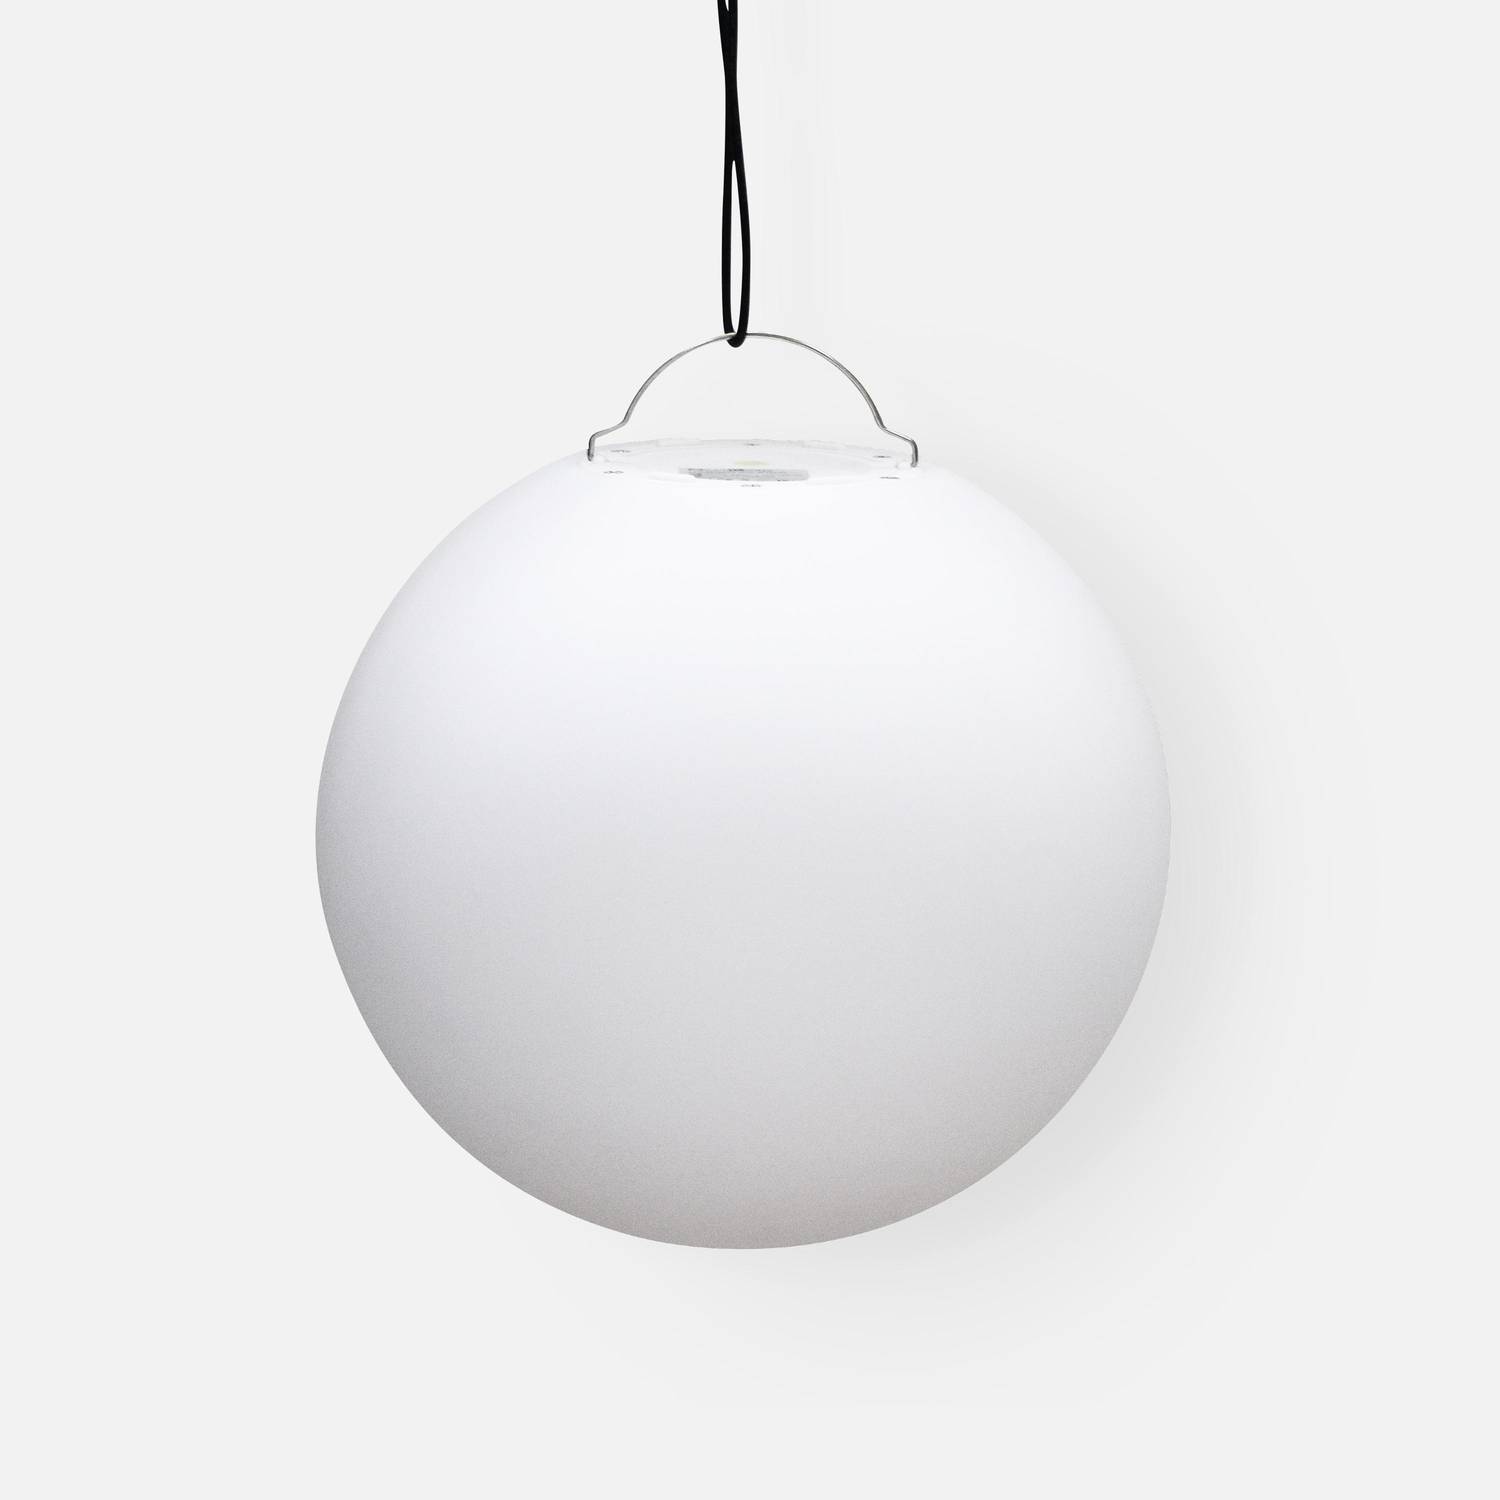 LED-Kugel 40cm - Dekorative Leuchtkugel, Ø40cm, warmweiß, mit Fernbedienung Photo5